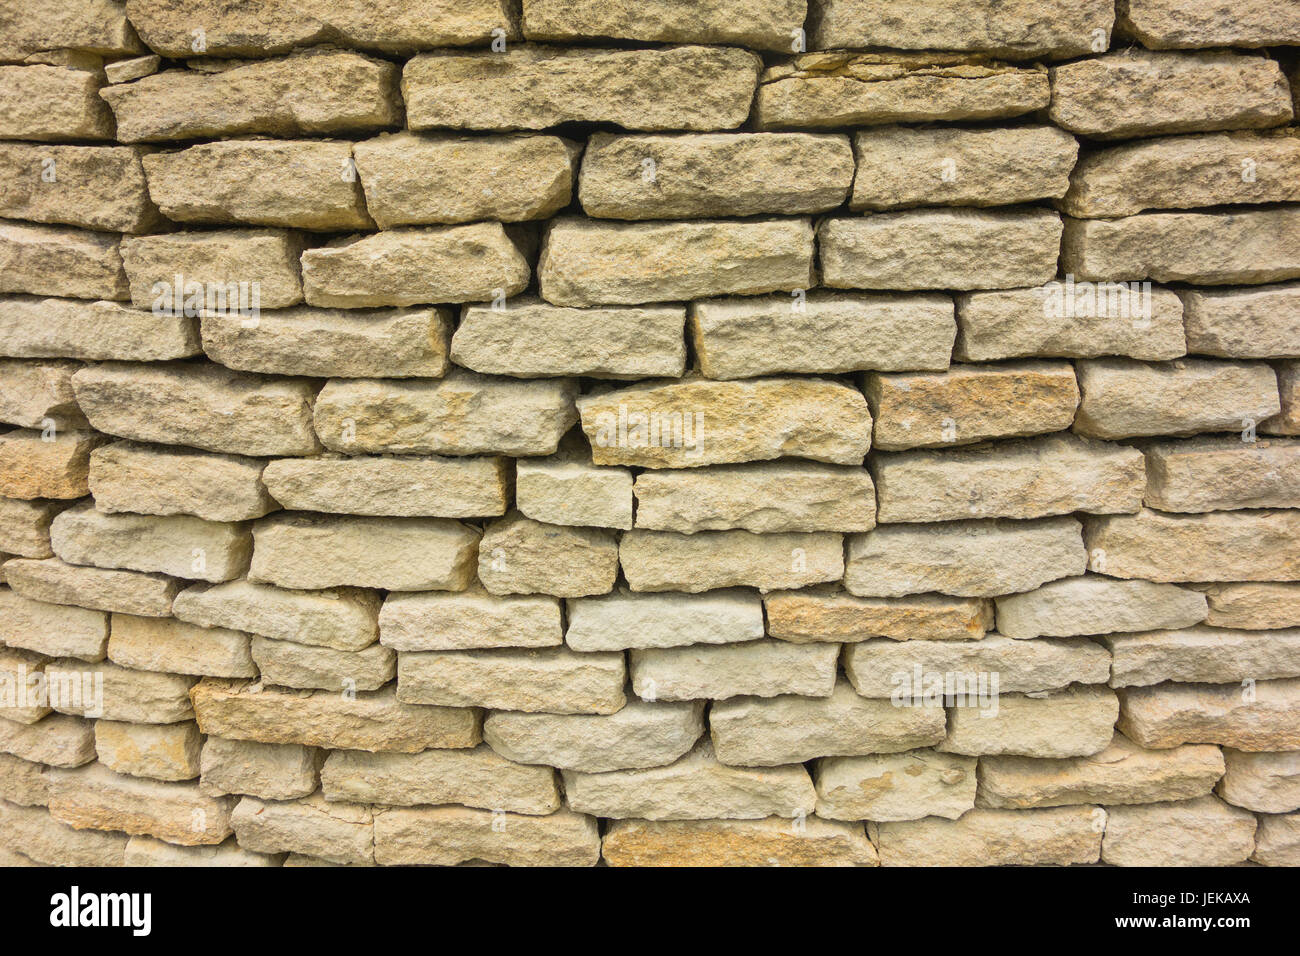 Mur en pierre sèche de Cotswold Burford Oxfordshire England UK Banque D'Images